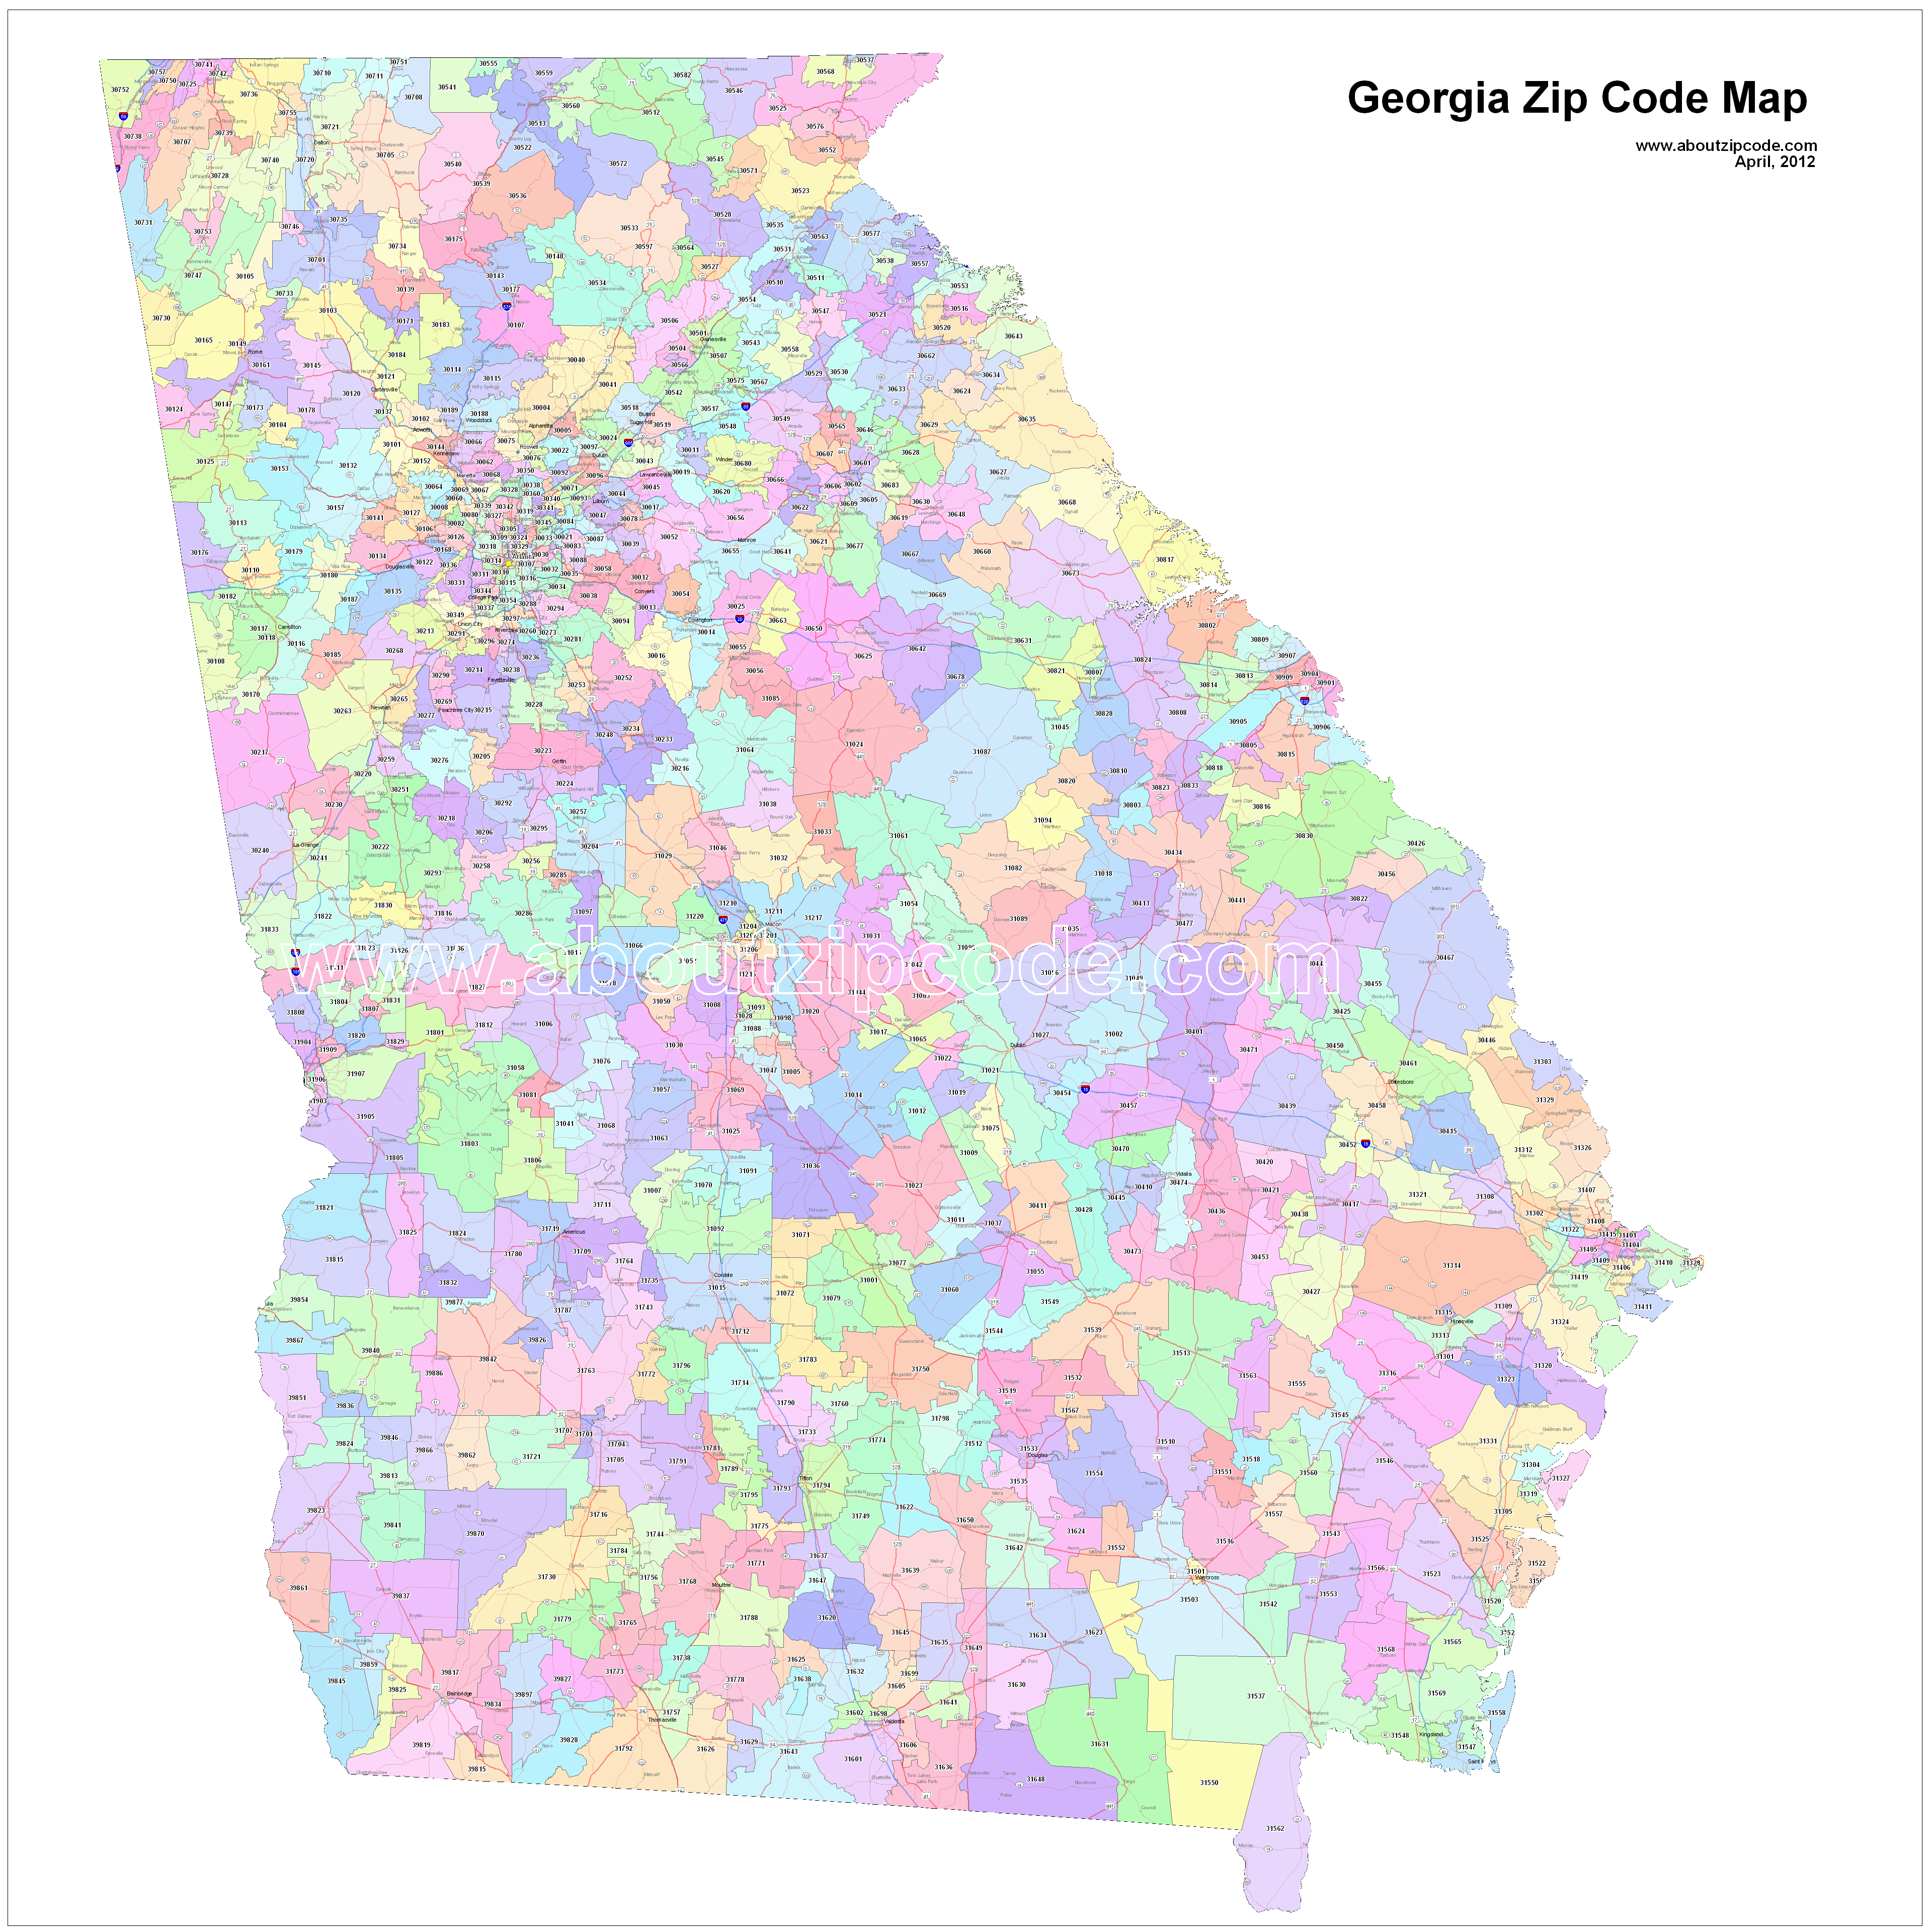 dalton ga zip code map Georgia Zip Code Maps Free Georgia Zip Code Maps dalton ga zip code map